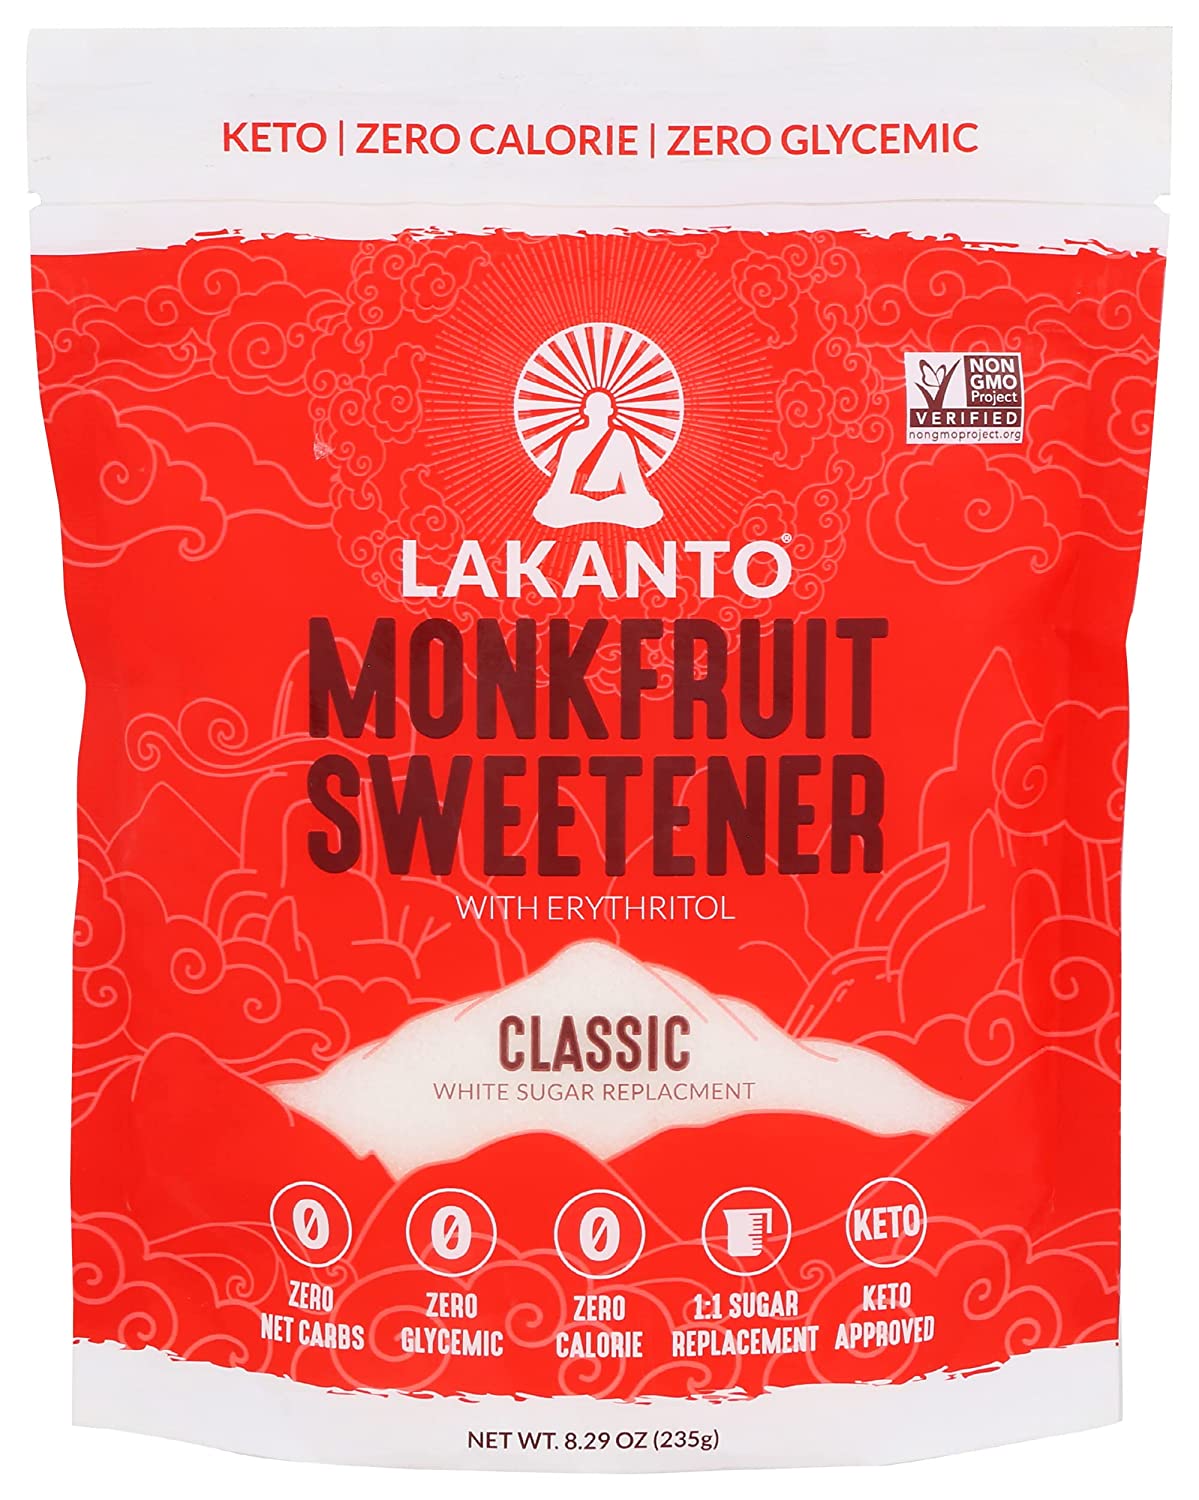 Lakanto monk fruit sweetener